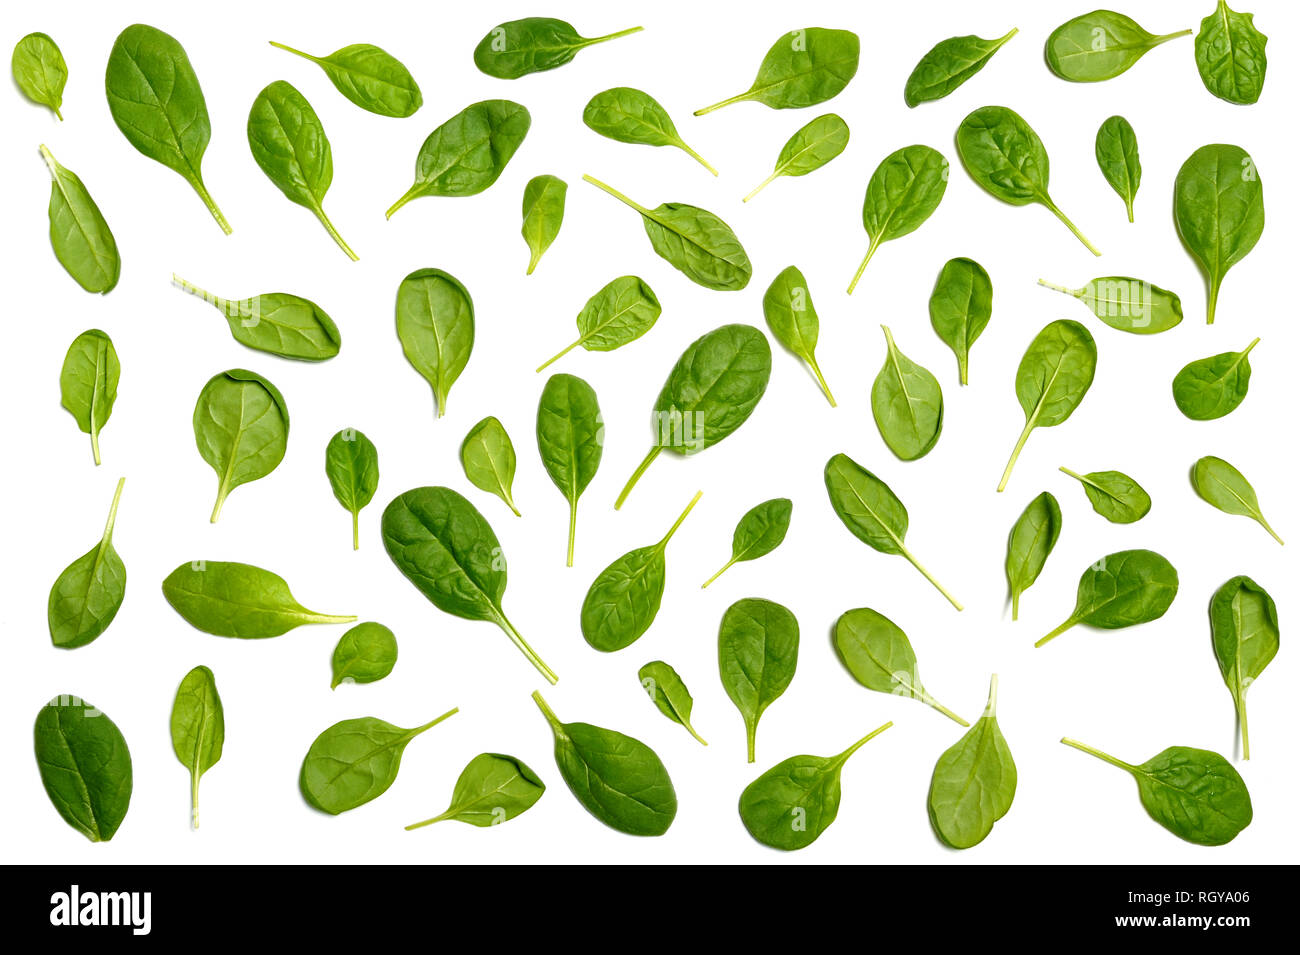 Patrón vegetal hecho de hojas de espinacas verdes aisladas sobre fondo blanco. Concepto de comida creativa. Foto de stock